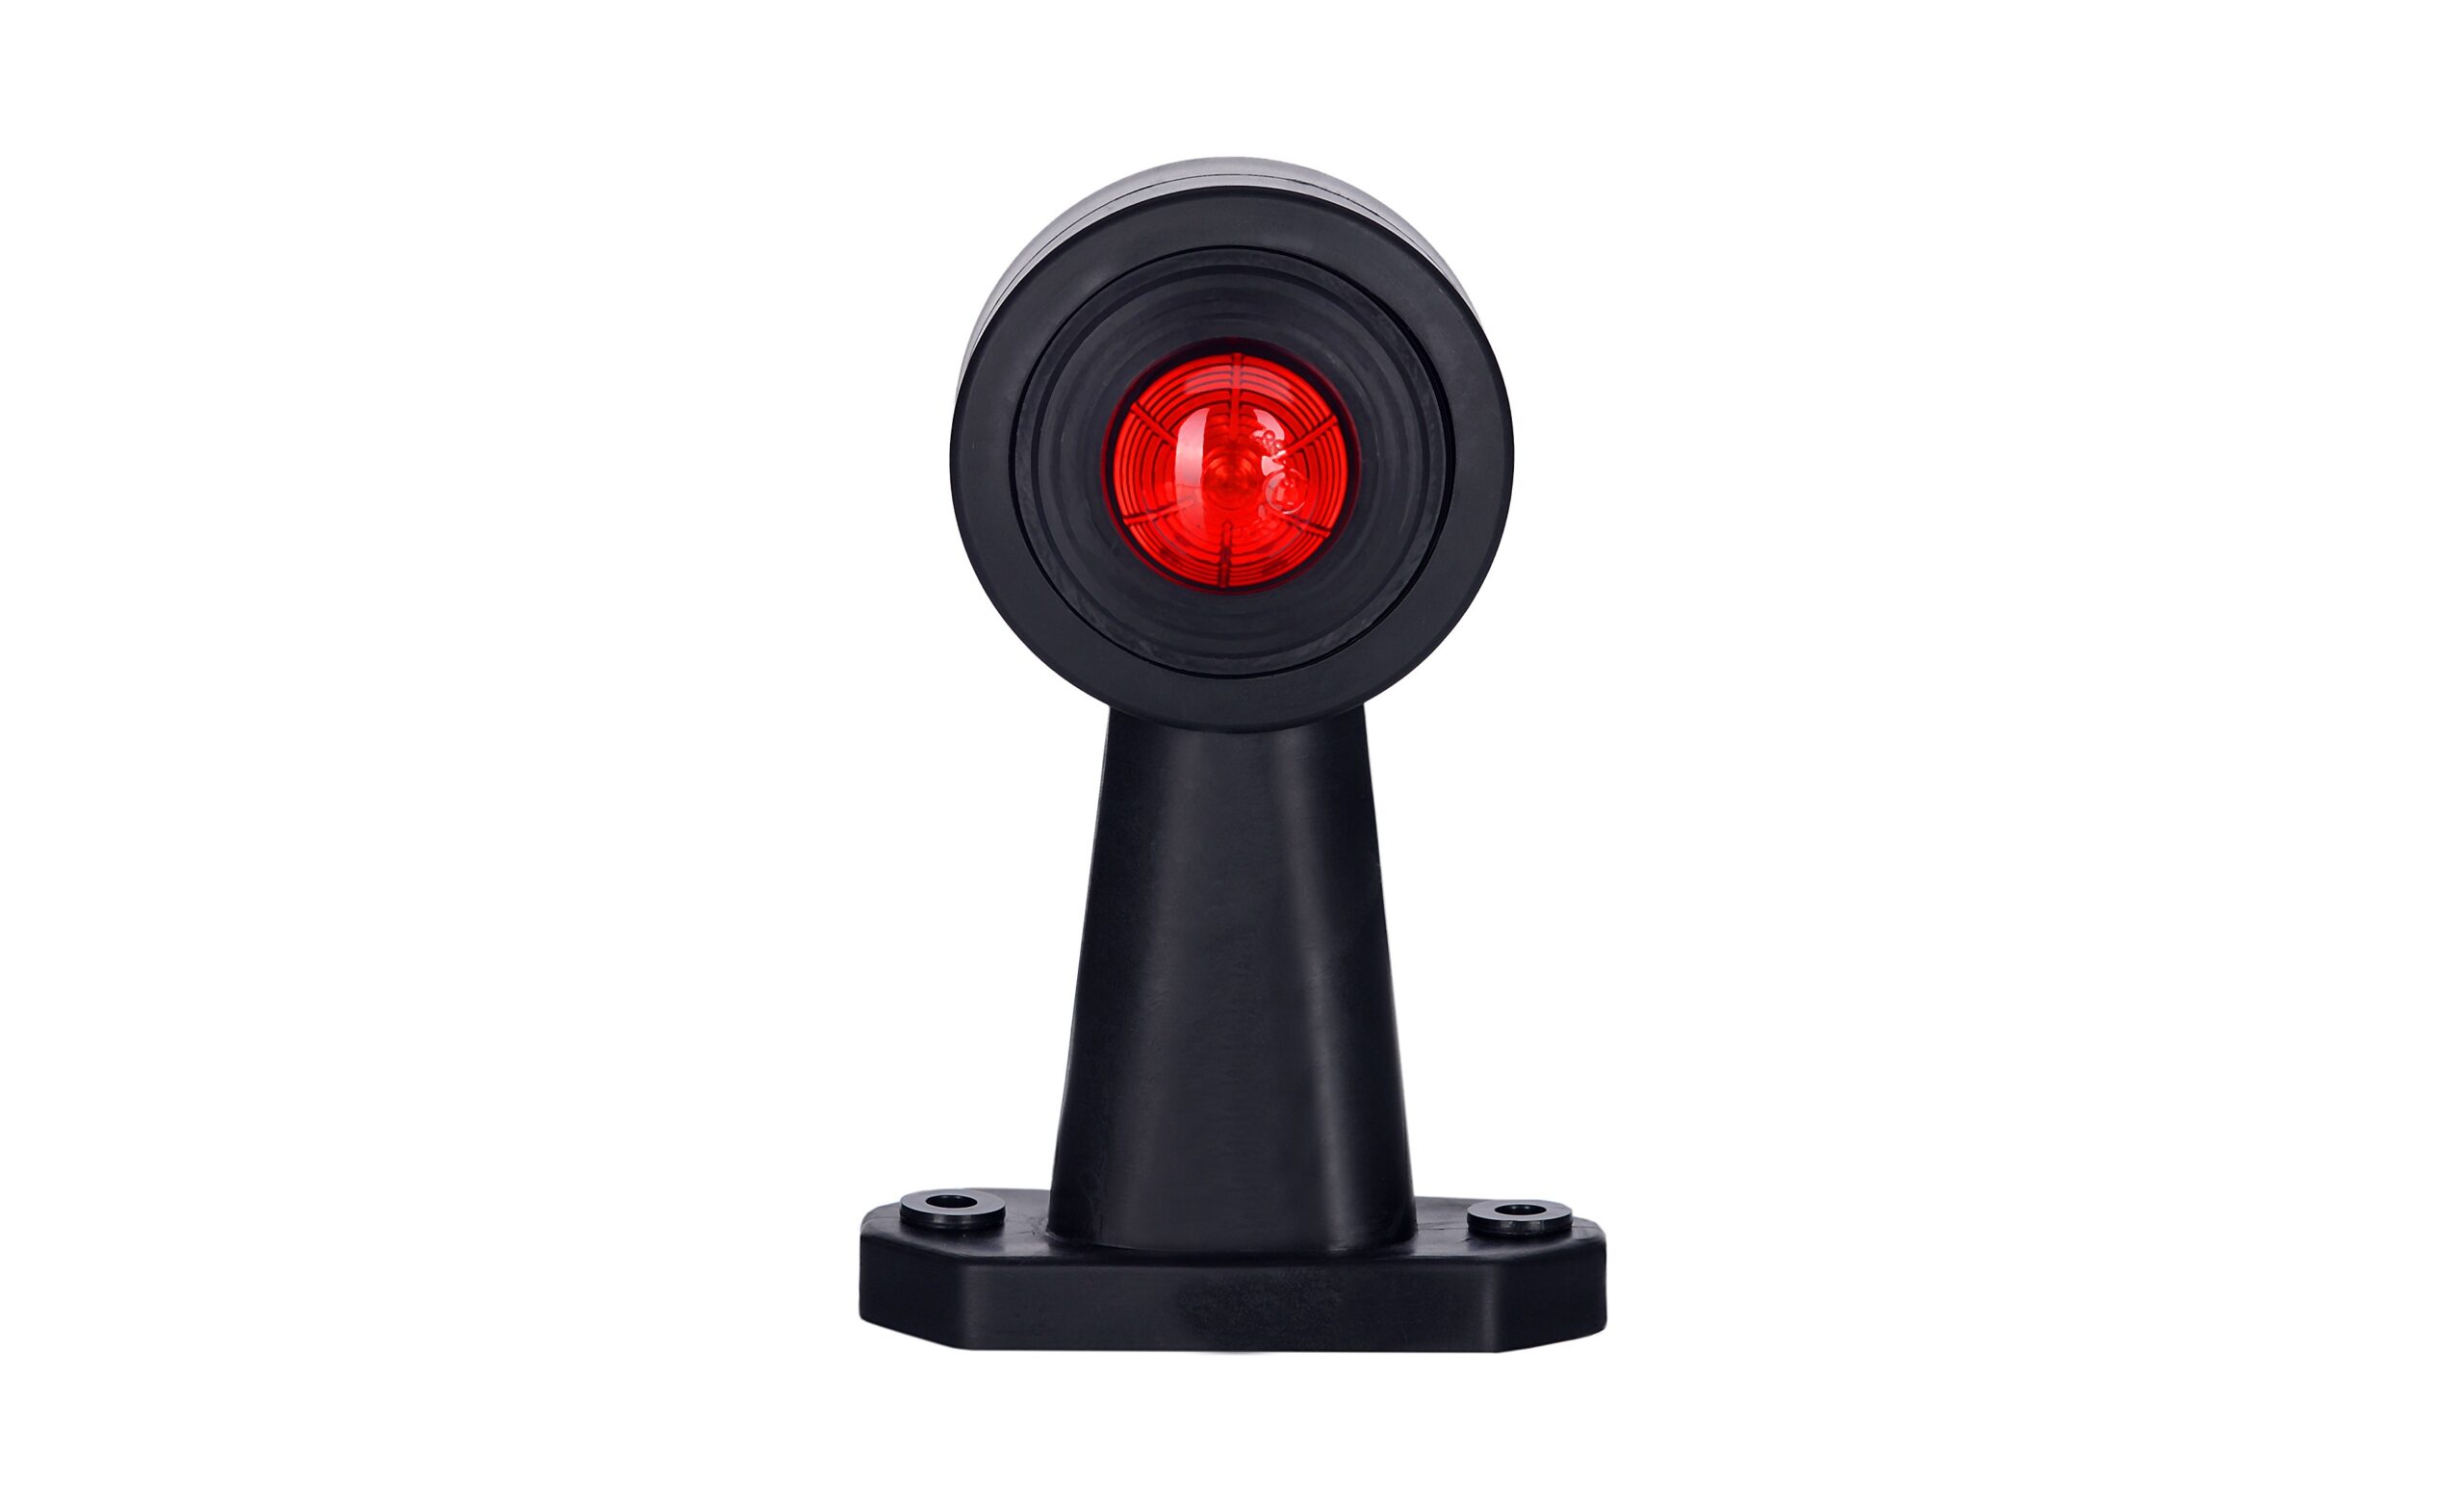 Lămpi de poziție și marcaj - Lampă gabarit rotundă, Horpol, tehnologie LED , culoare alb-roșu, alimentare 12/24V, fomcoshop.ro